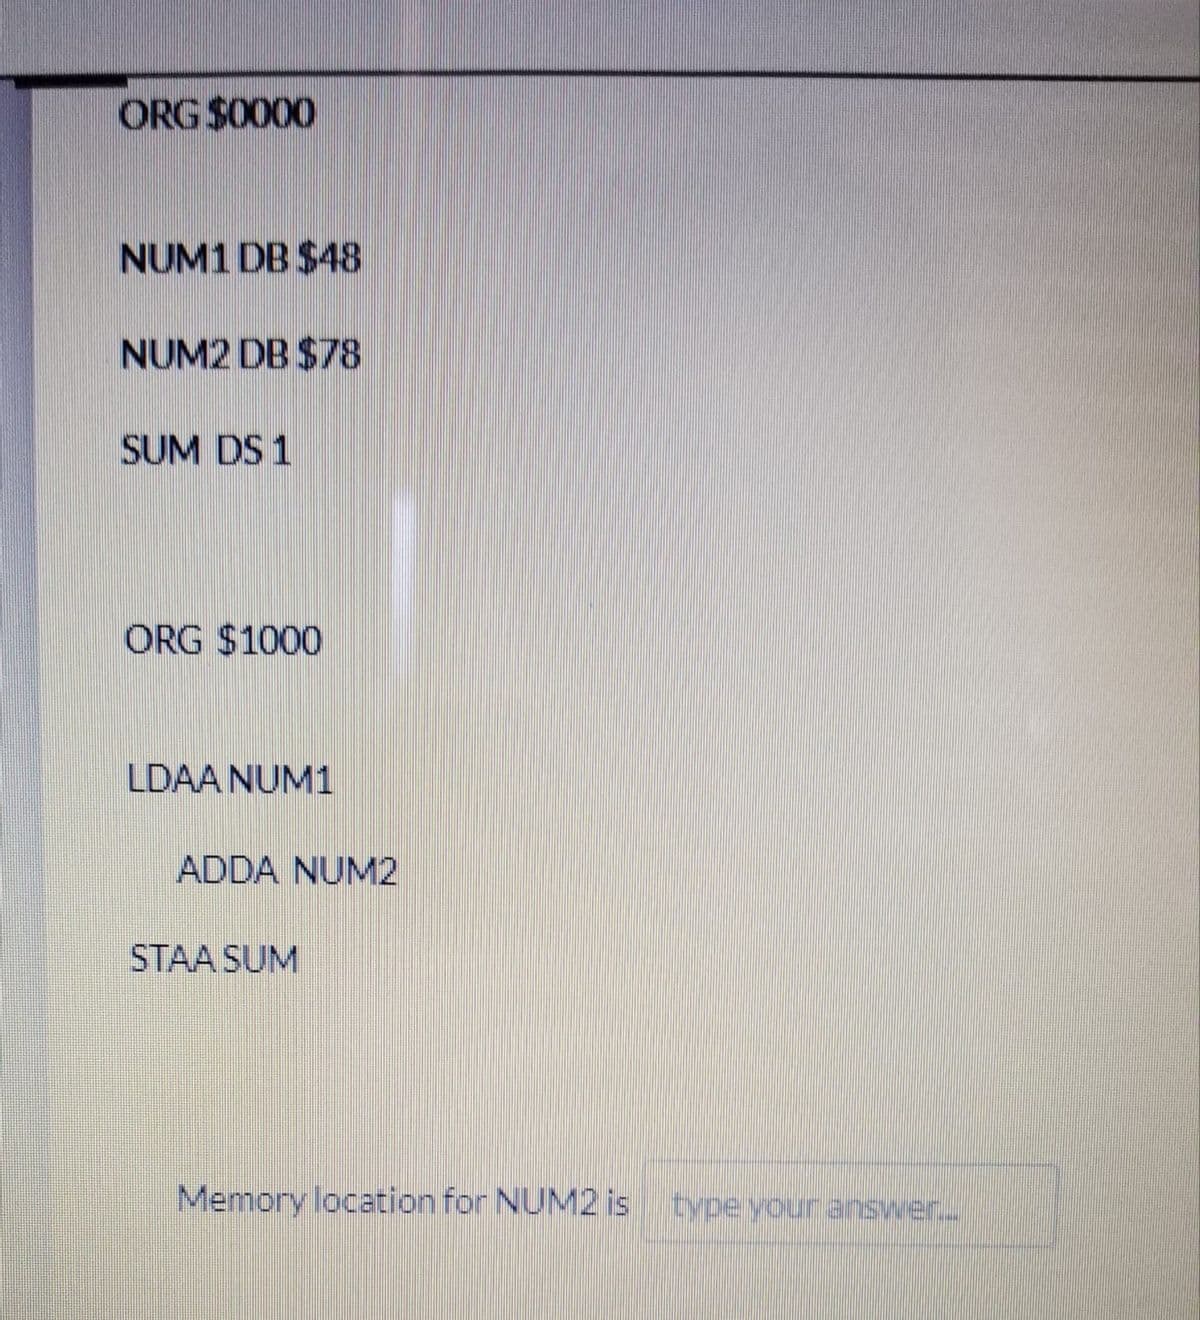 ORG $0000
NUM1 DB $48
NUM2 DB $78
SUM DS 1
ORG $1000
LDAA NUM1
ADDA NUM2
STAA SUM
Memory location for NUM2 is typeyour answer.
